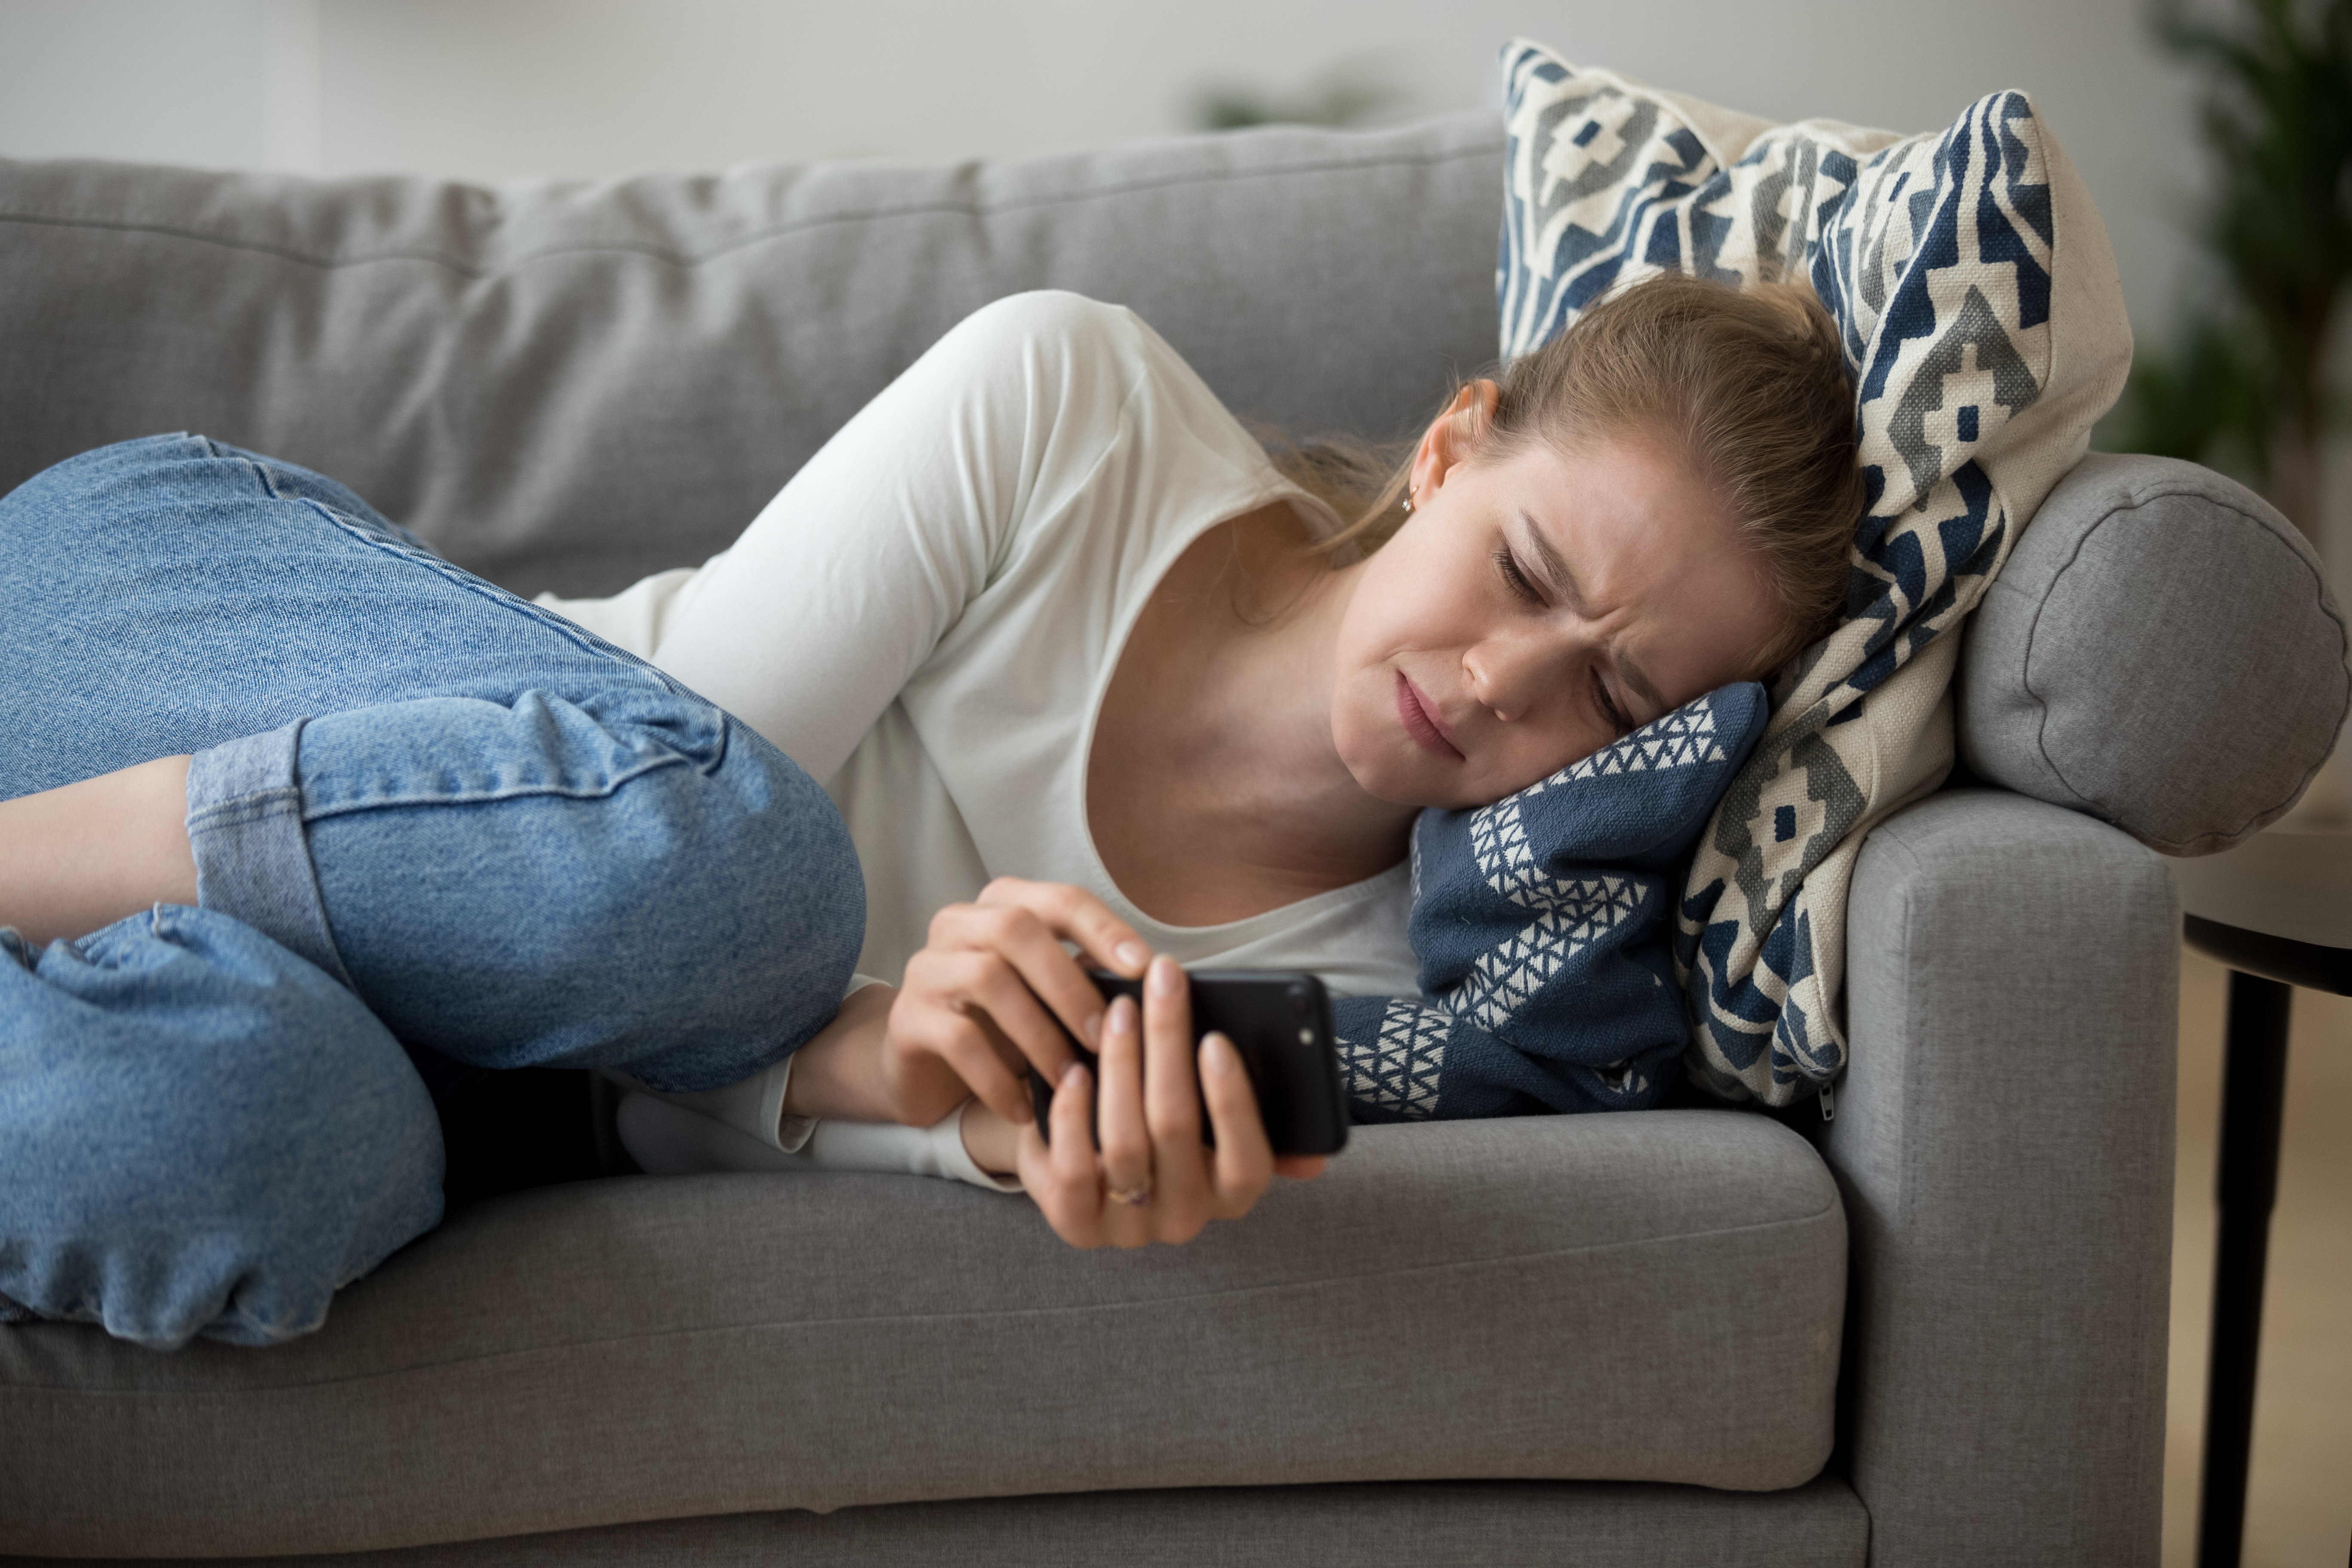 Una joven llorando recostada en un sofá | Fuente: Shutterstock